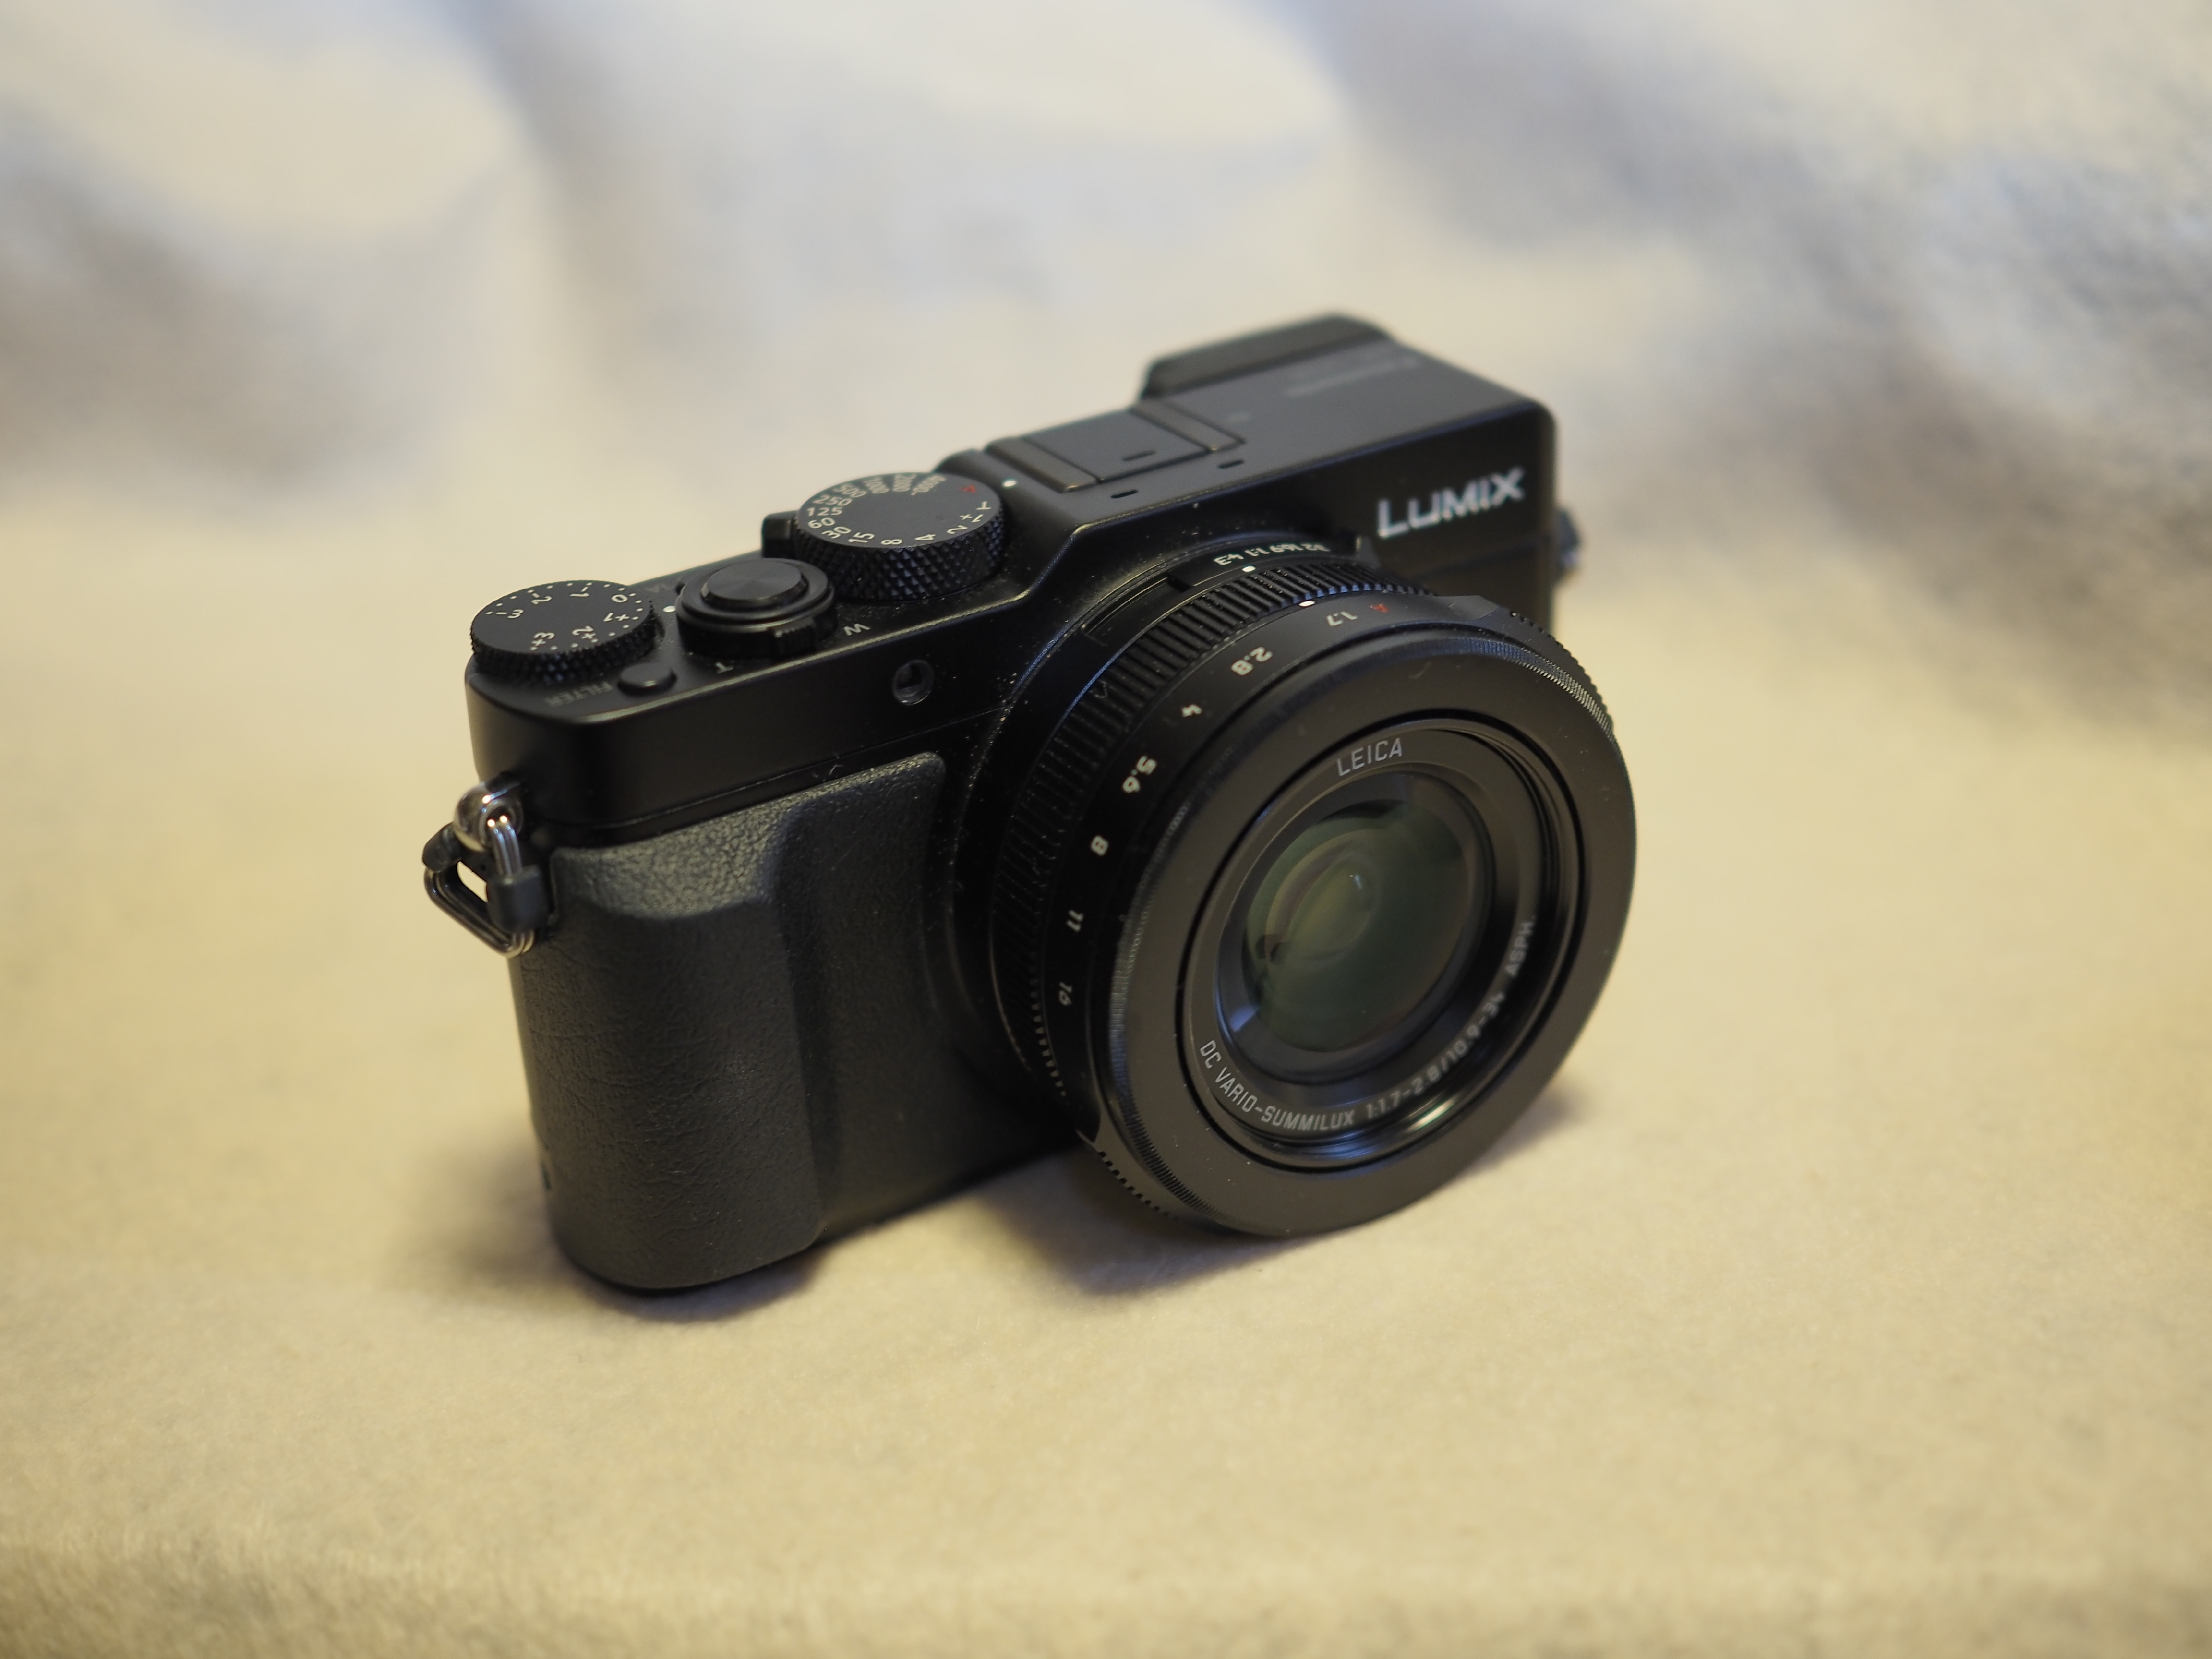 ビデオカメラだけでなくコンパクトデジカメでも4K撮影可能な製品が各社から発売され始めている。